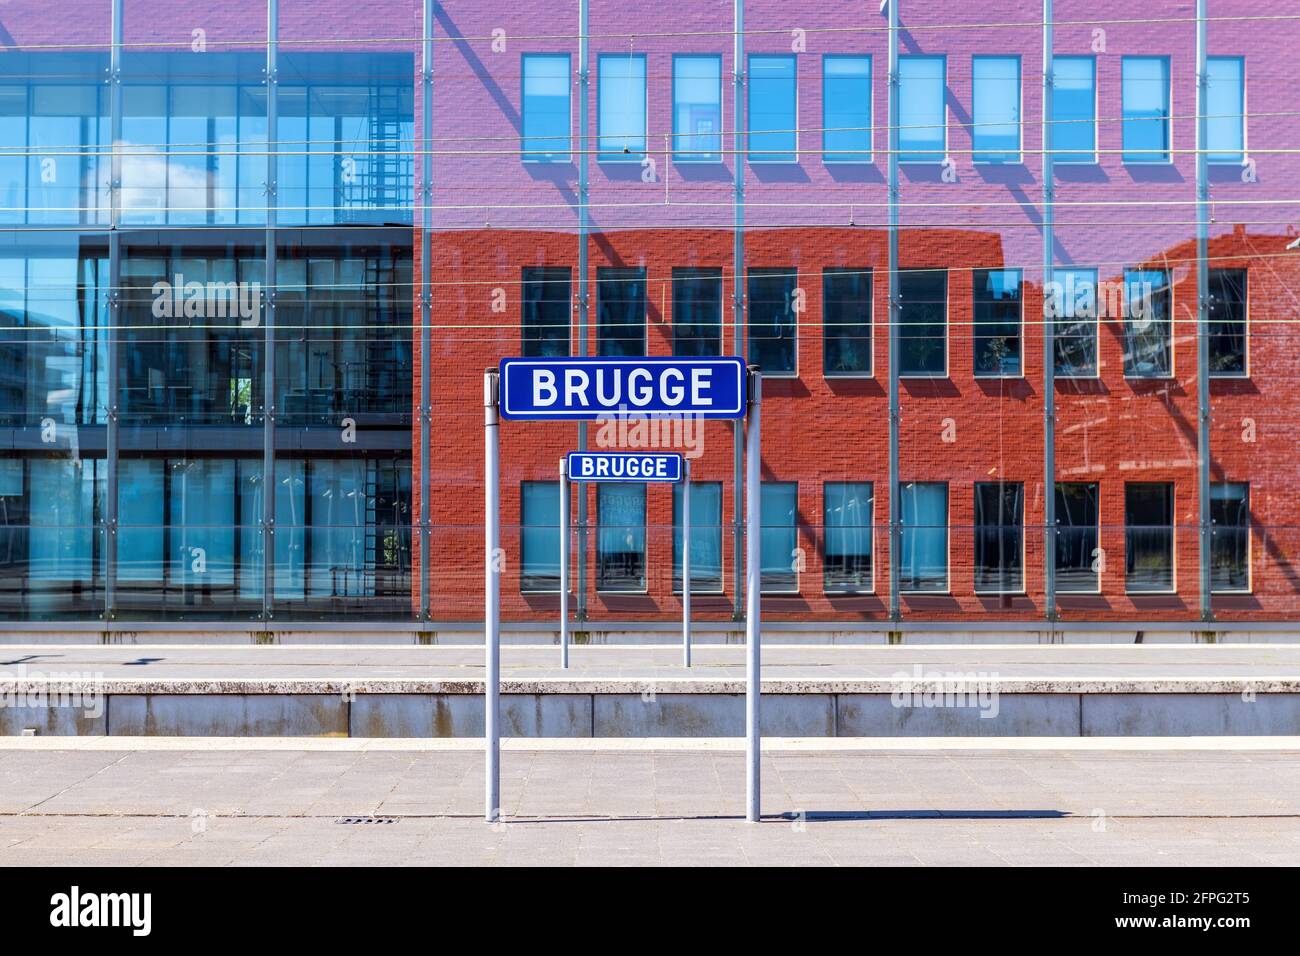 Bahnhof mit Namensschild der Stadt Brügge (Brügge in Femish) auf Plattform im Sommer mit modernem Hauptgebäude, Belgien. Konzentrieren Sie sich auf das Namensschild. Stockfoto